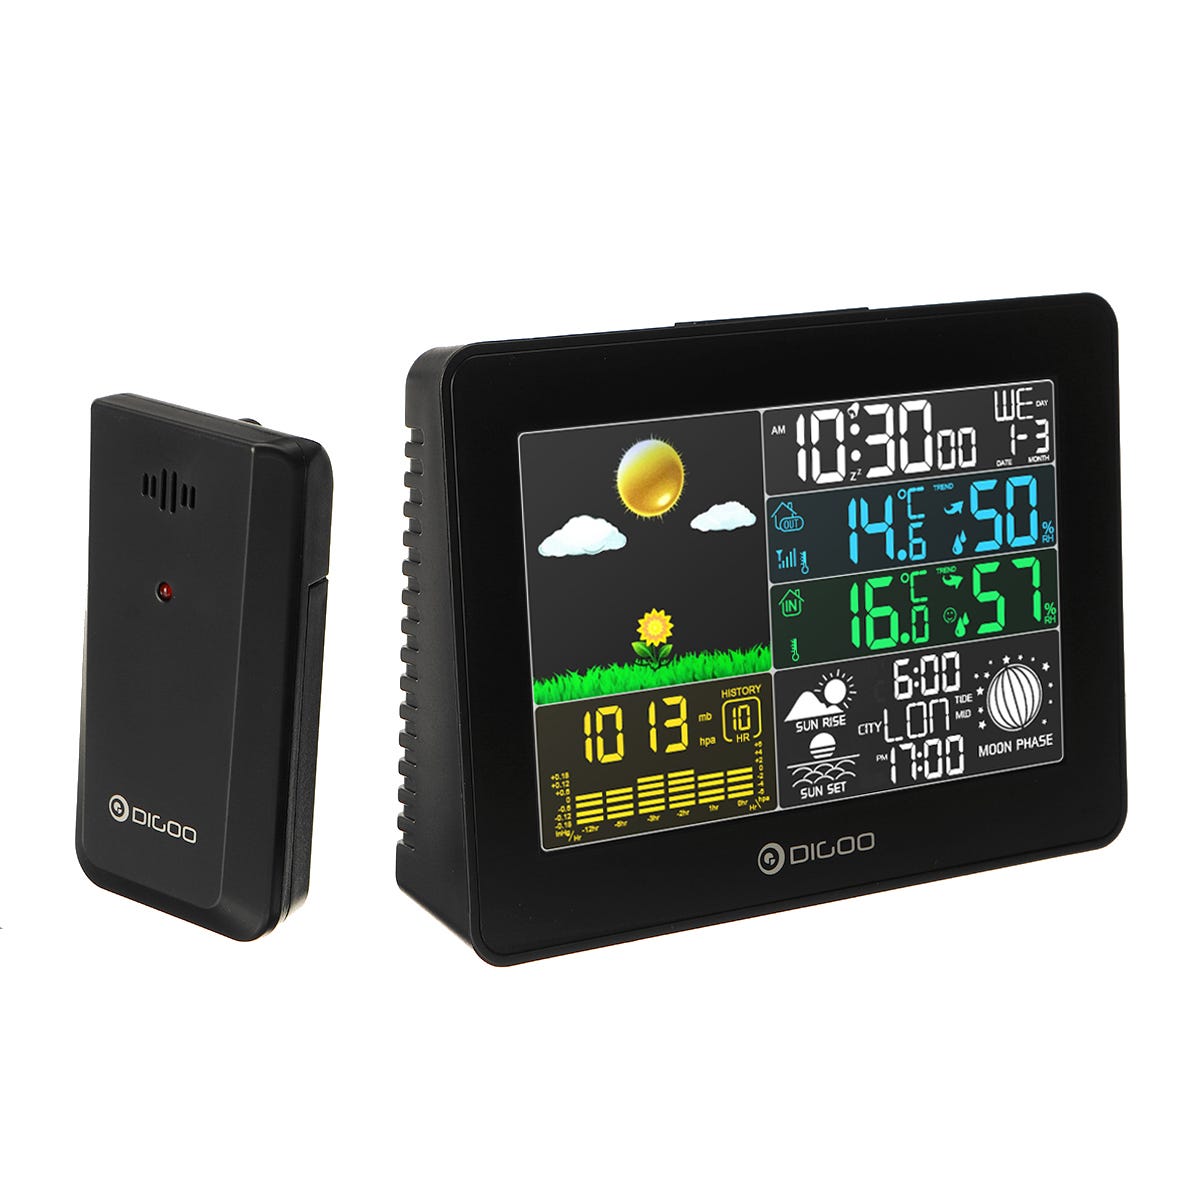 Station météo sans fil USB LCD Digoo réveil thermomètre hygromètre  baromètre capteur intérieur/extérieur